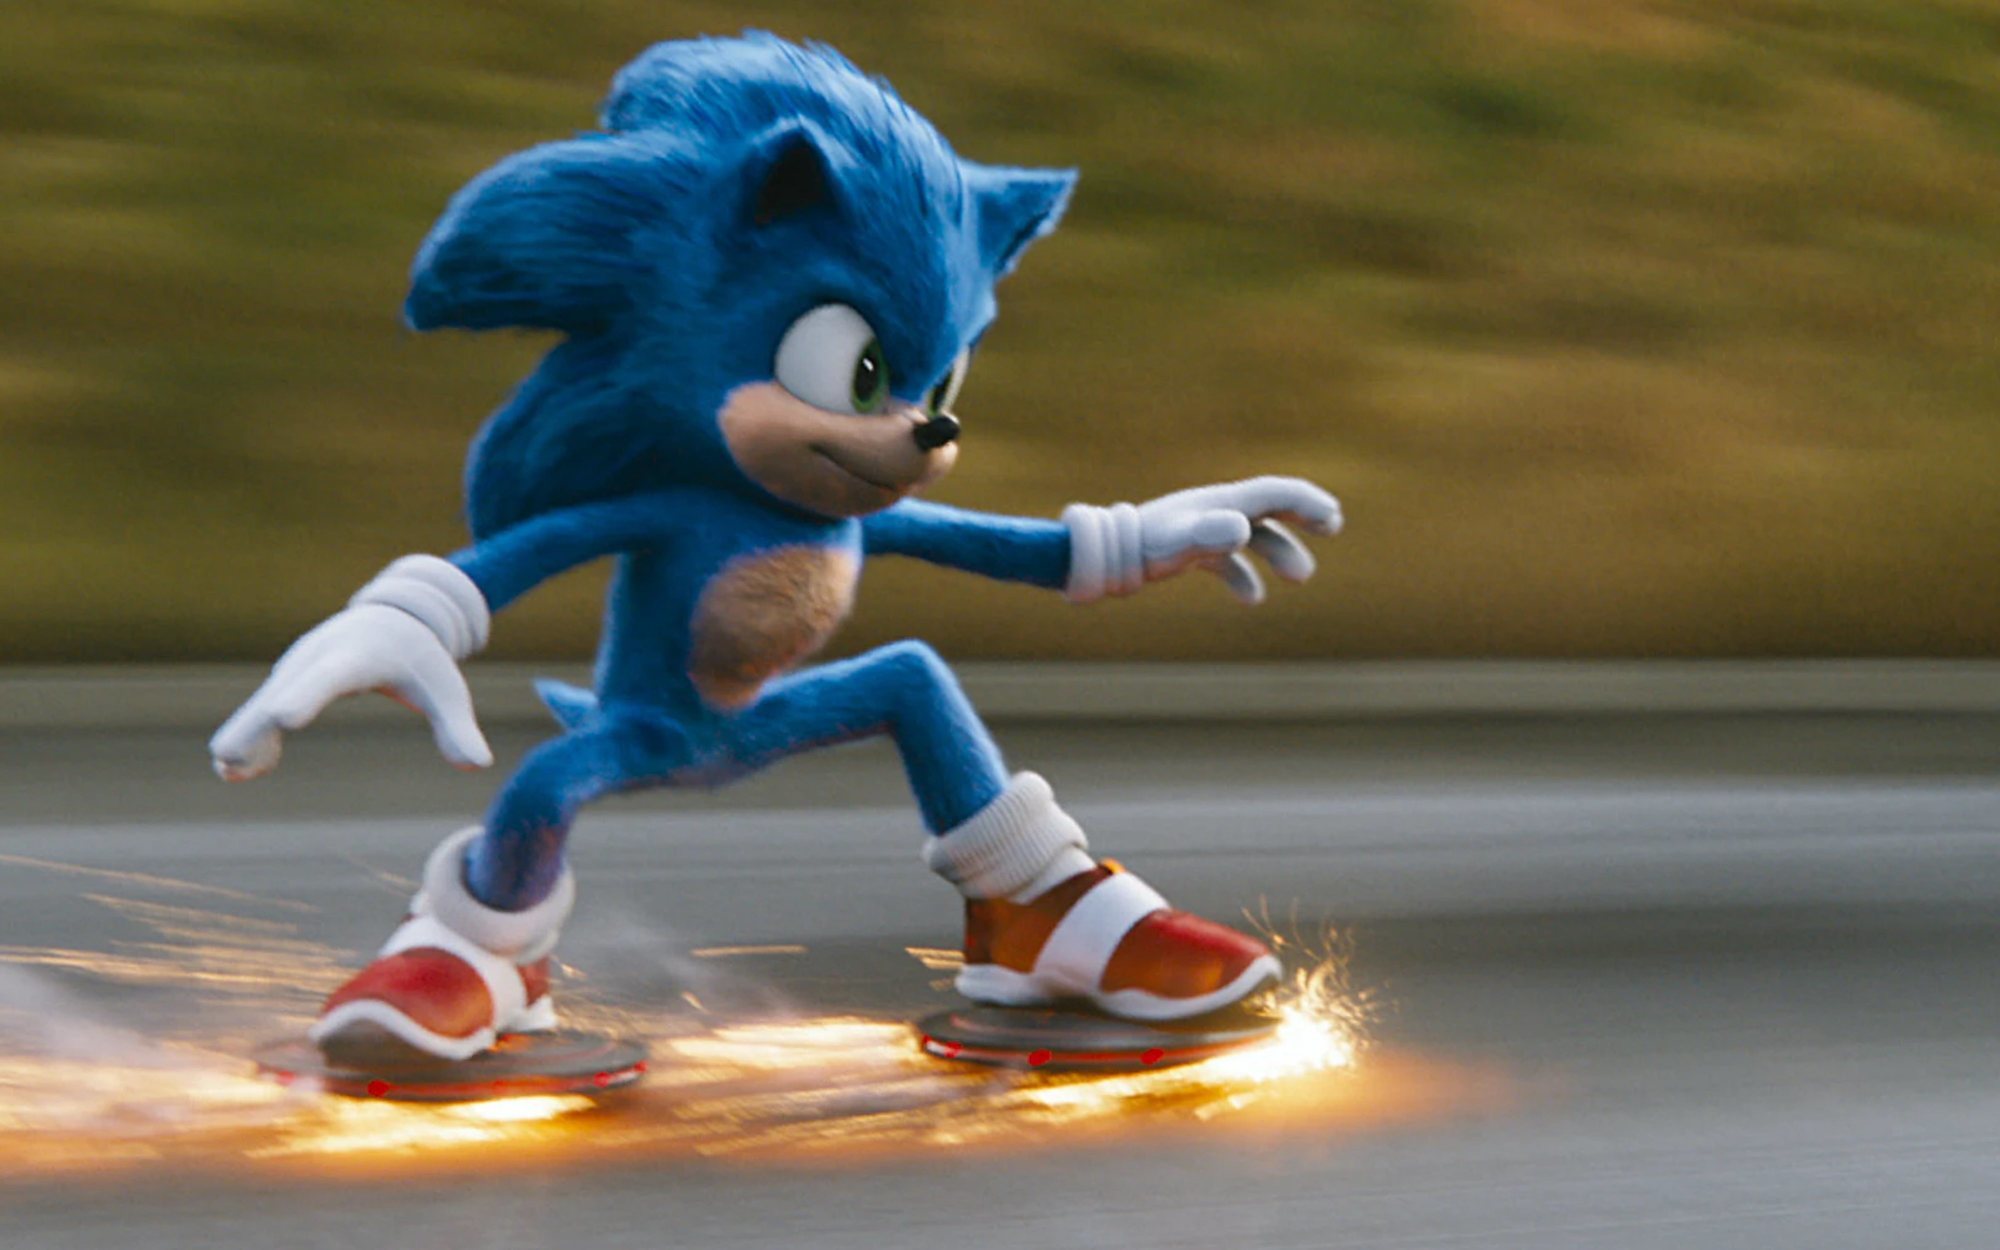 Sonic tendrá su propia serie de animación en Netflix